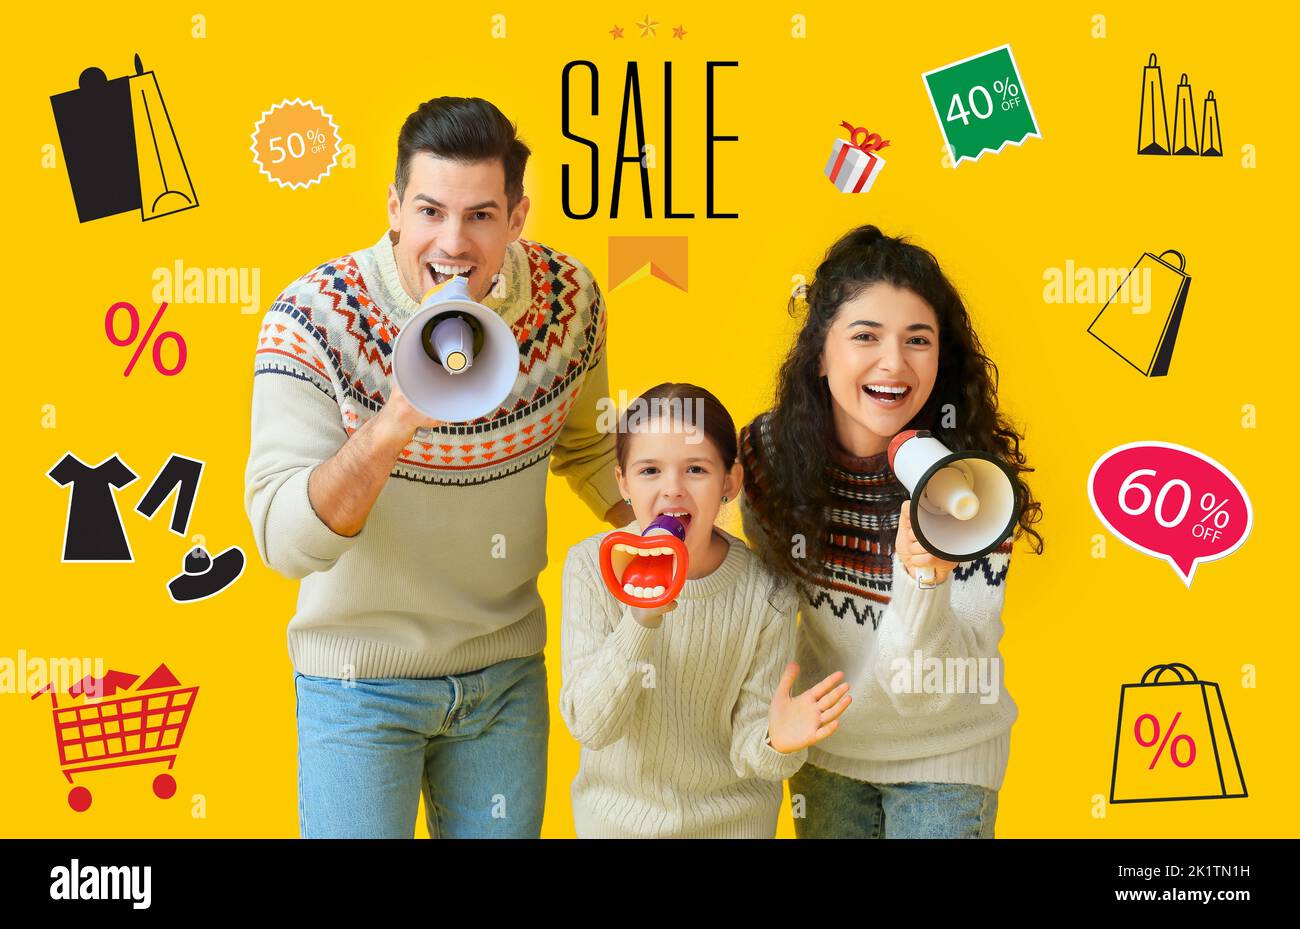 Affiche pour la vente de vêtements avec une famille heureuse et des mégaphones Banque D'Images